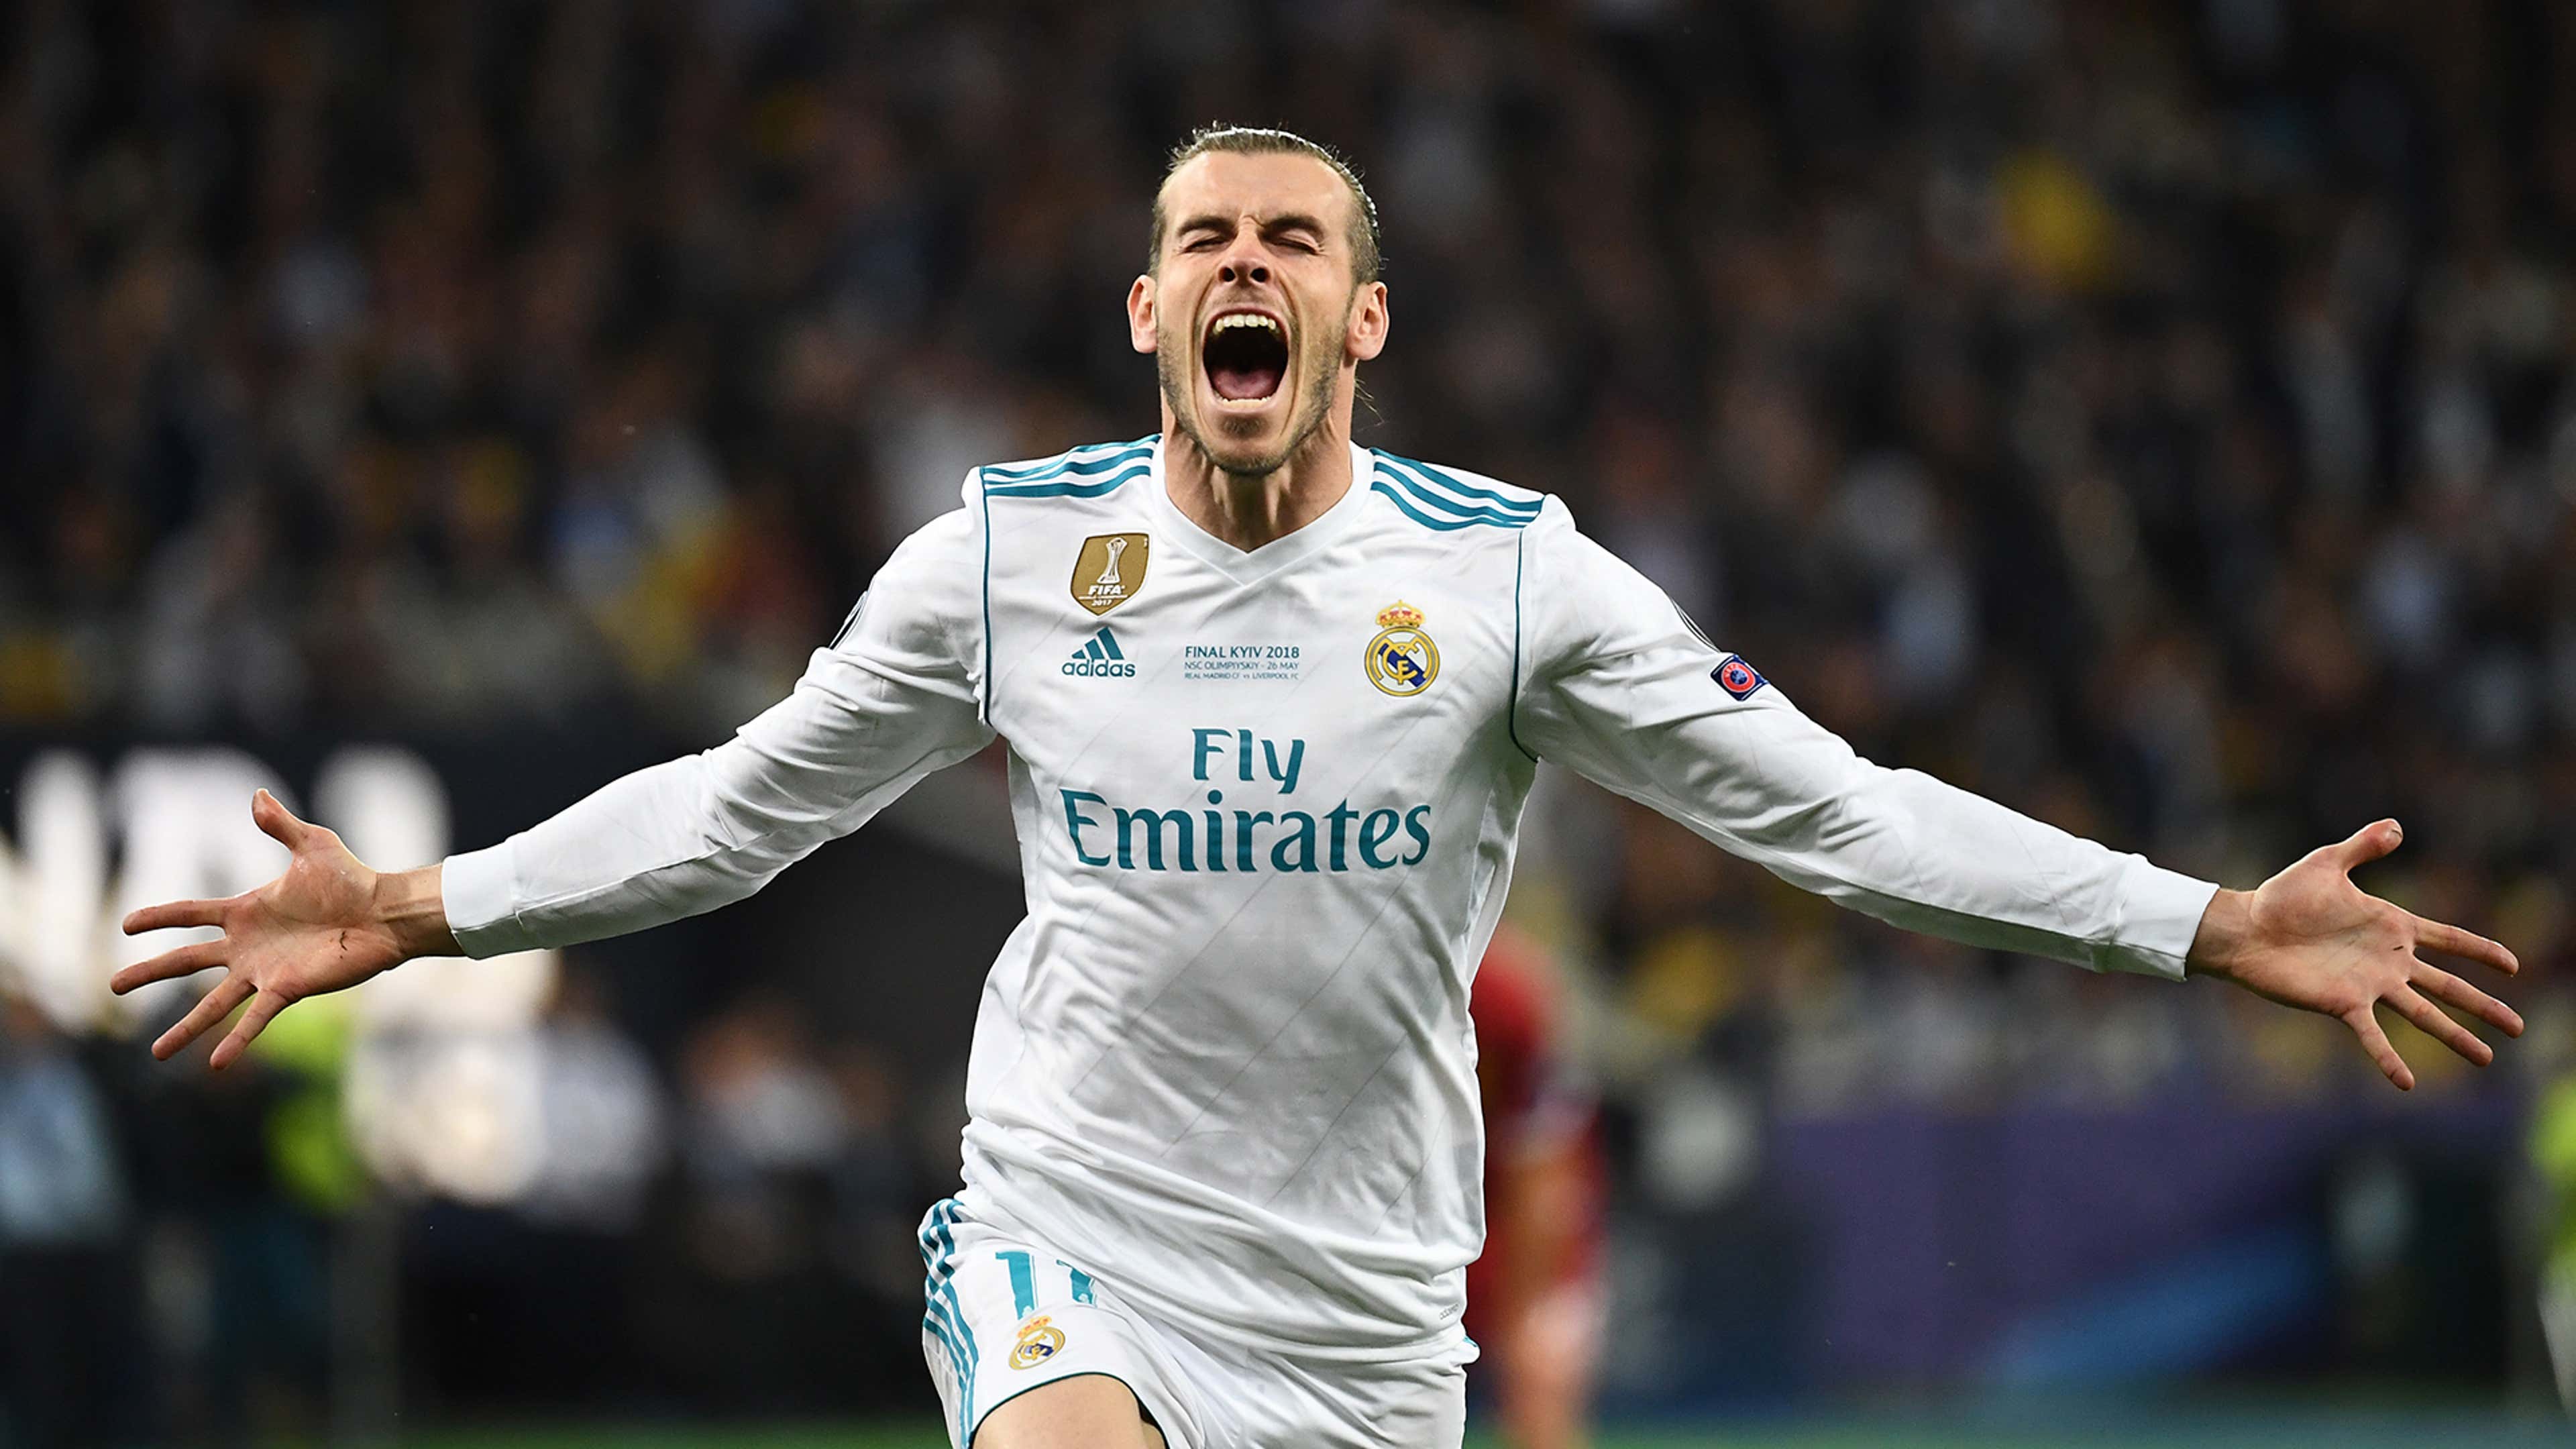 Gareth Bale: Football superstar retires after trophy-laden career